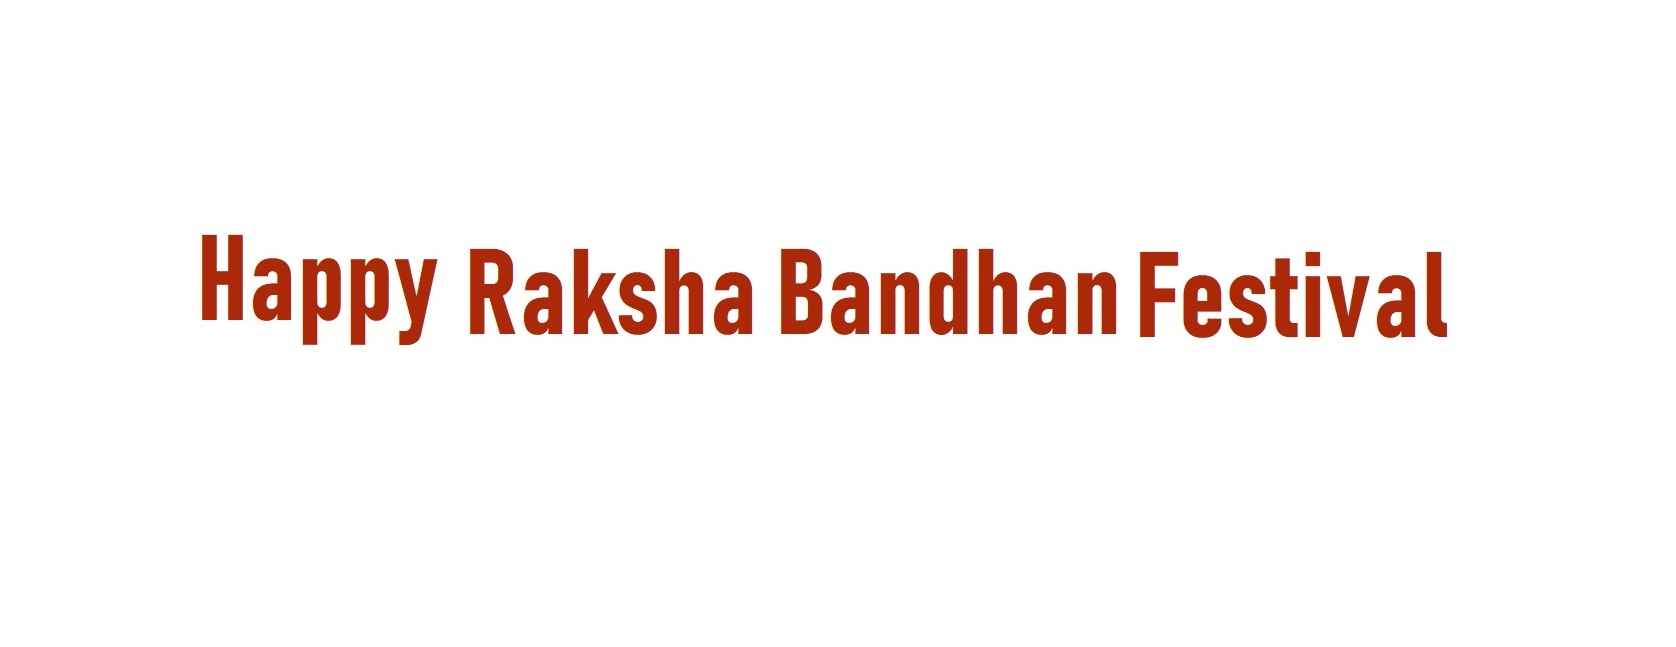 Raksha Bandhan Festival Tour